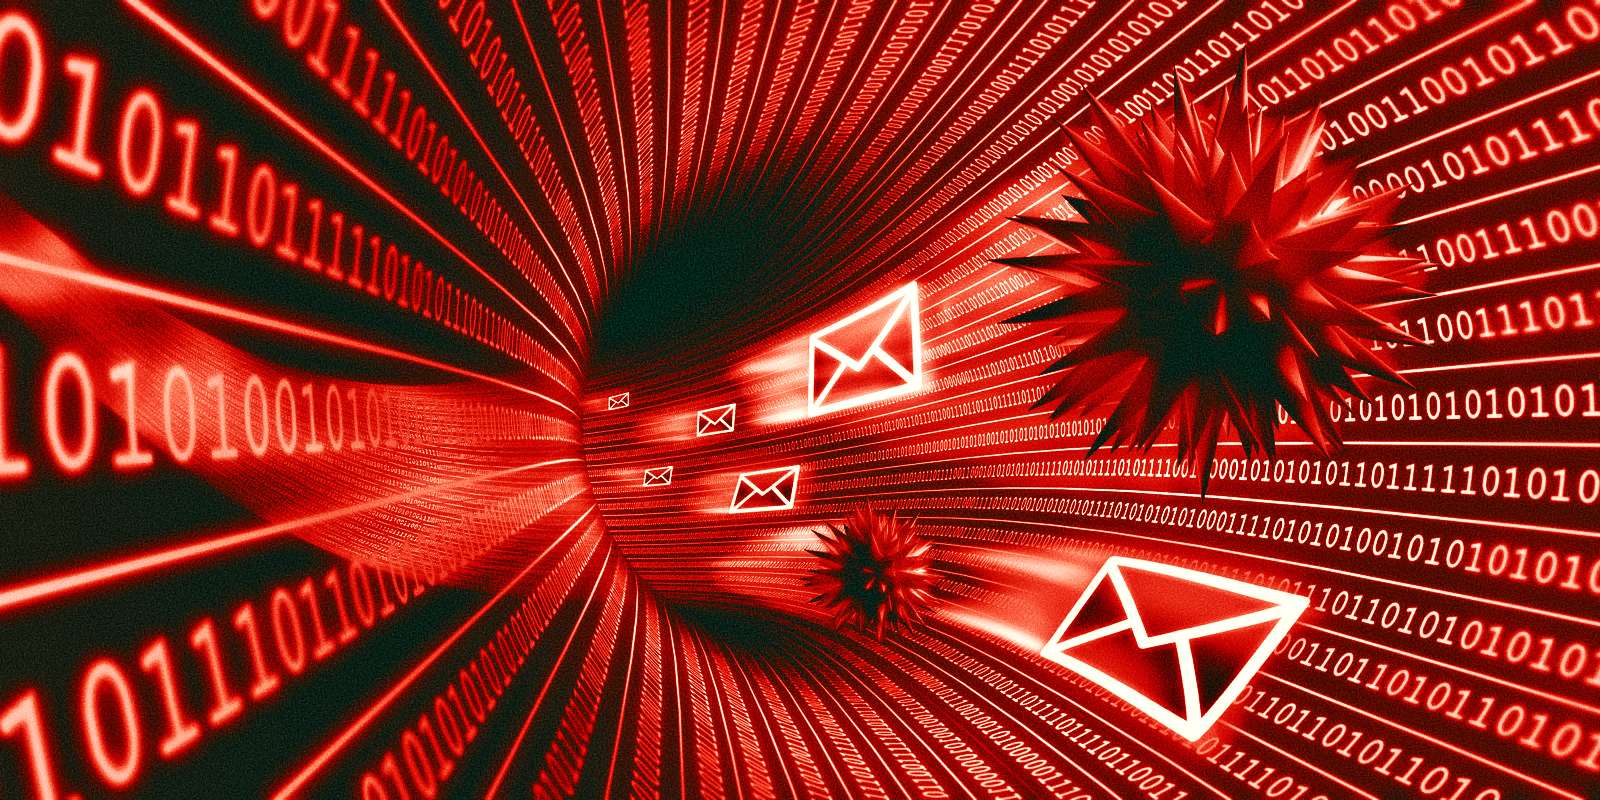 Malware Phishing emails